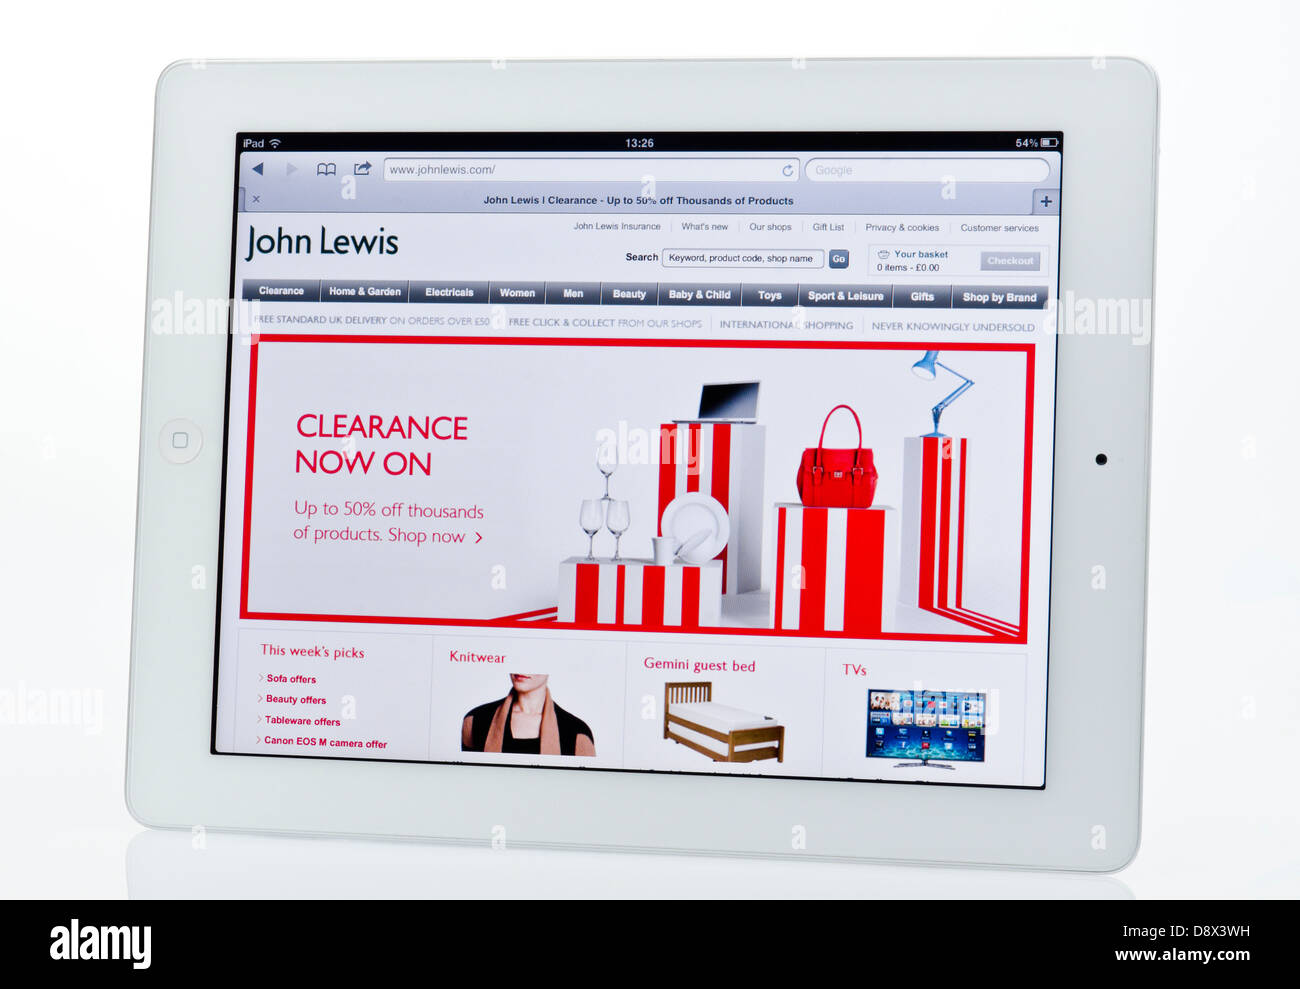 Apple Ipad zeigt John Lewis Website. Stockfoto